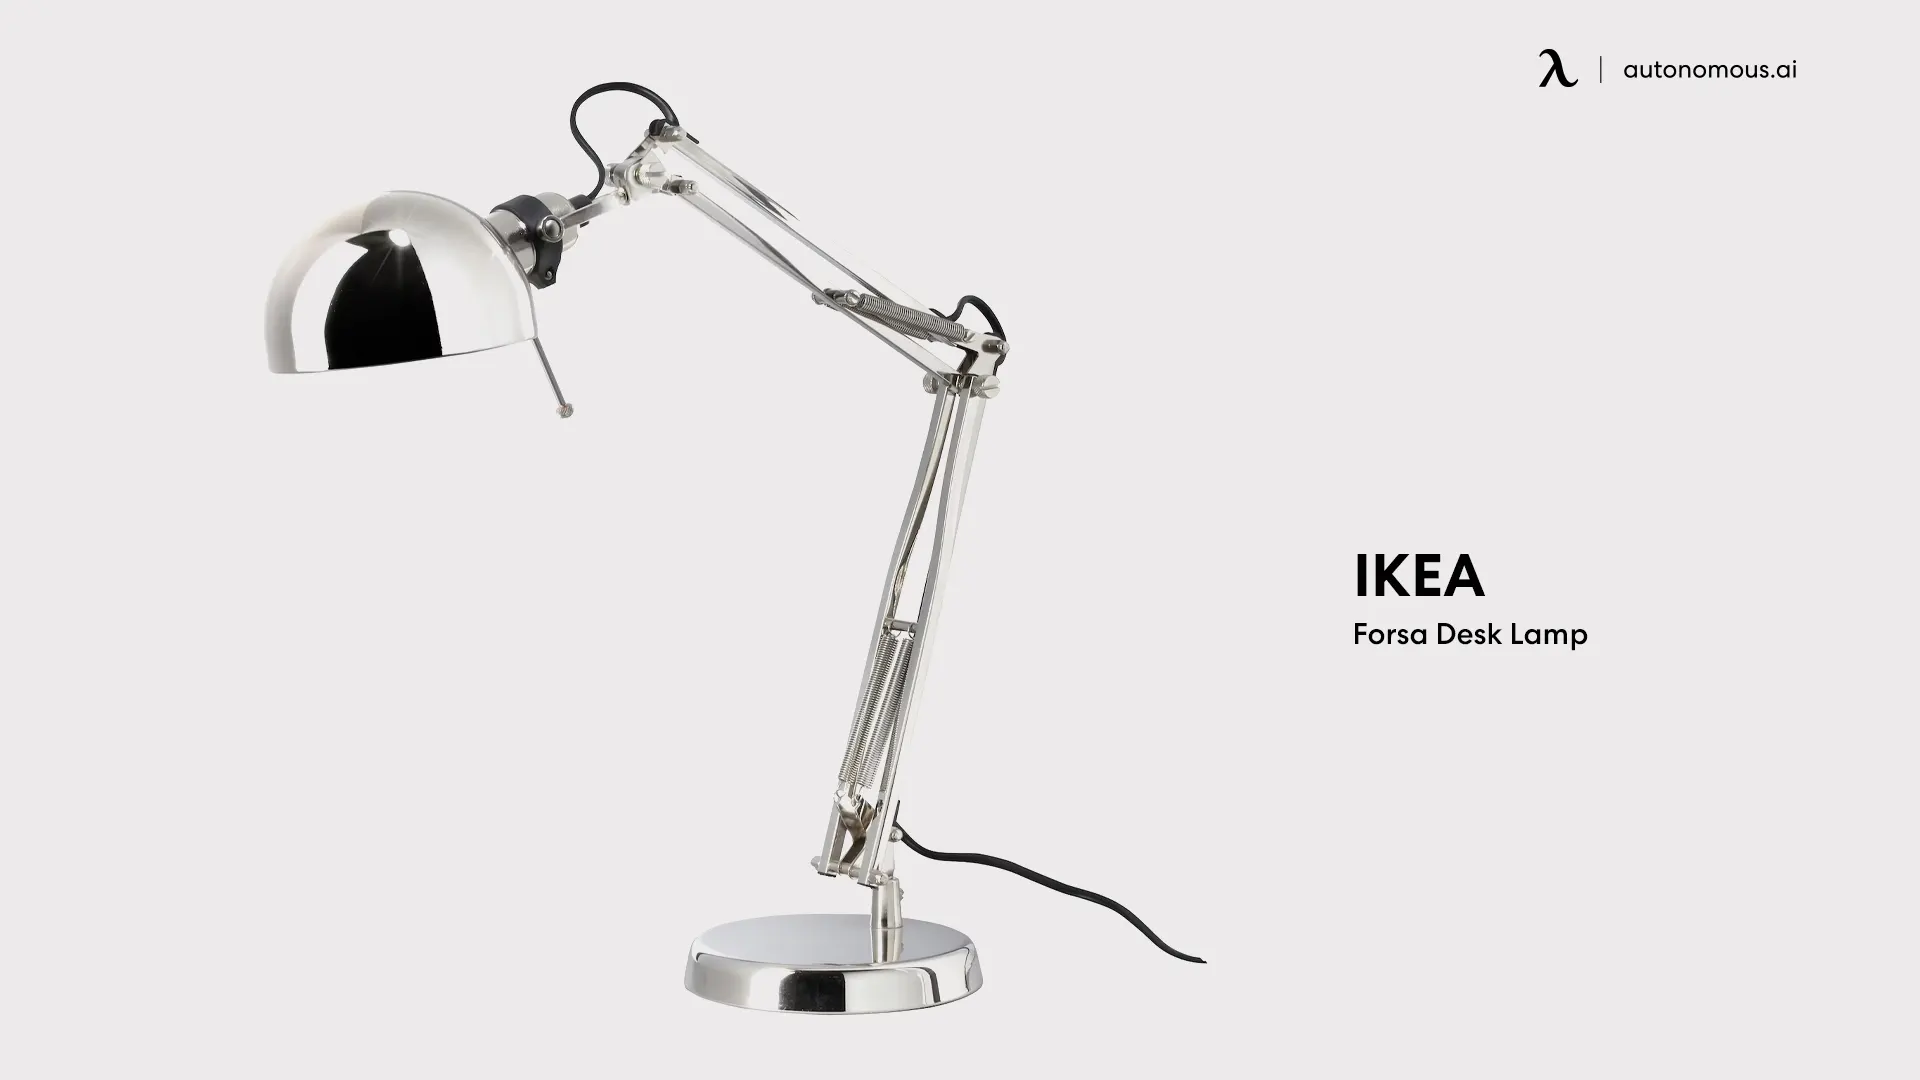 IKEA Forsa Desk Lamp